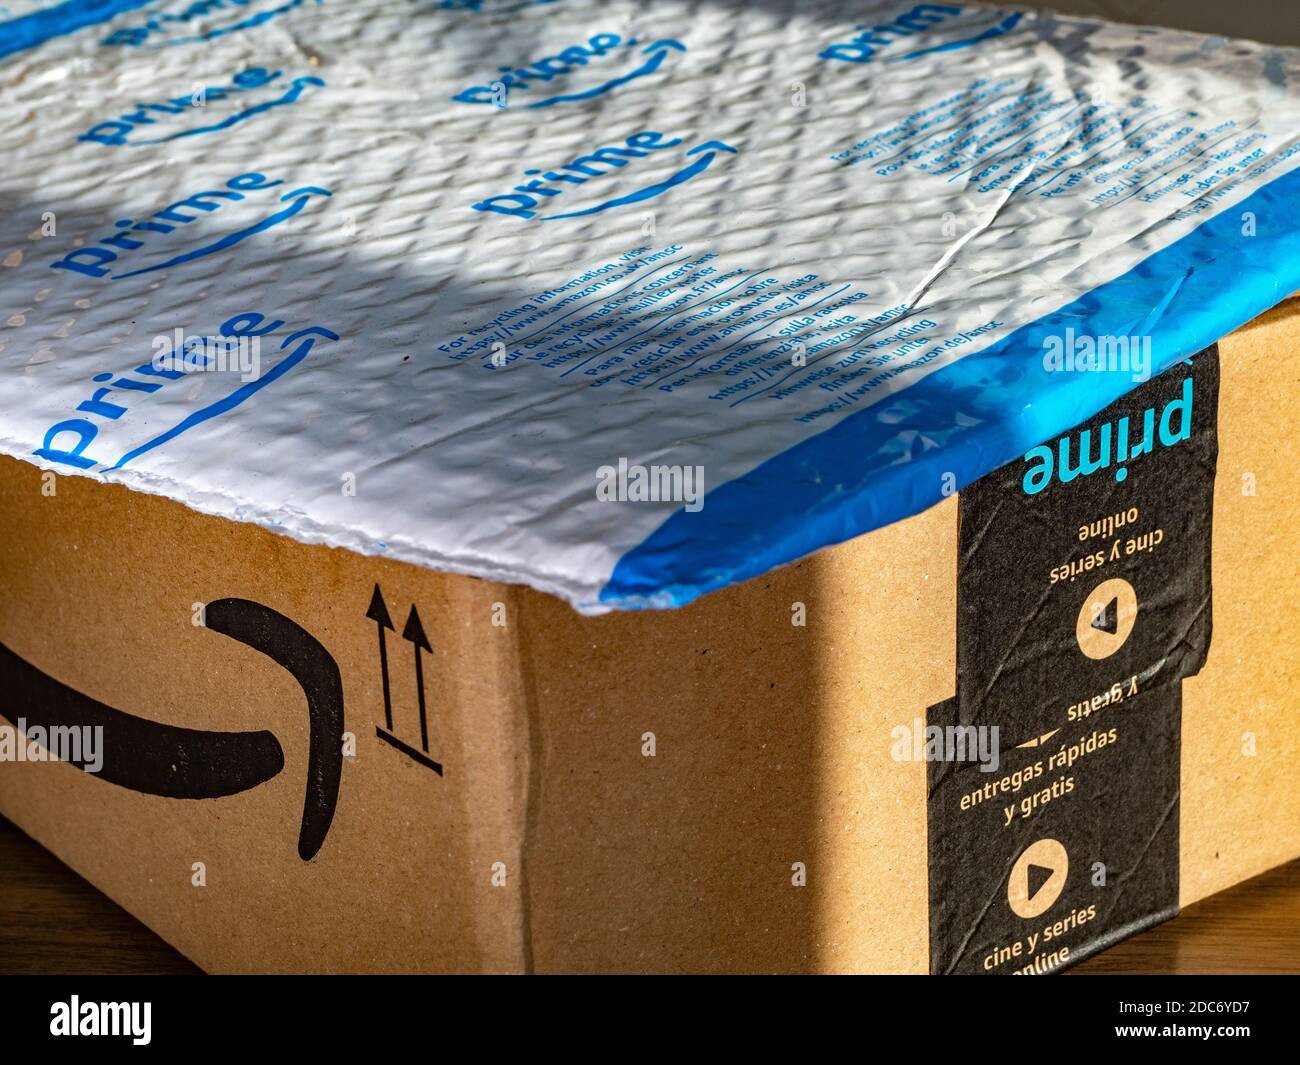 Nahaufnahme einer Amazon Prime gepolsterten Tasche auf einer Amazon Prime  Karton-Liefer-/Versandbox Stockfotografie - Alamy